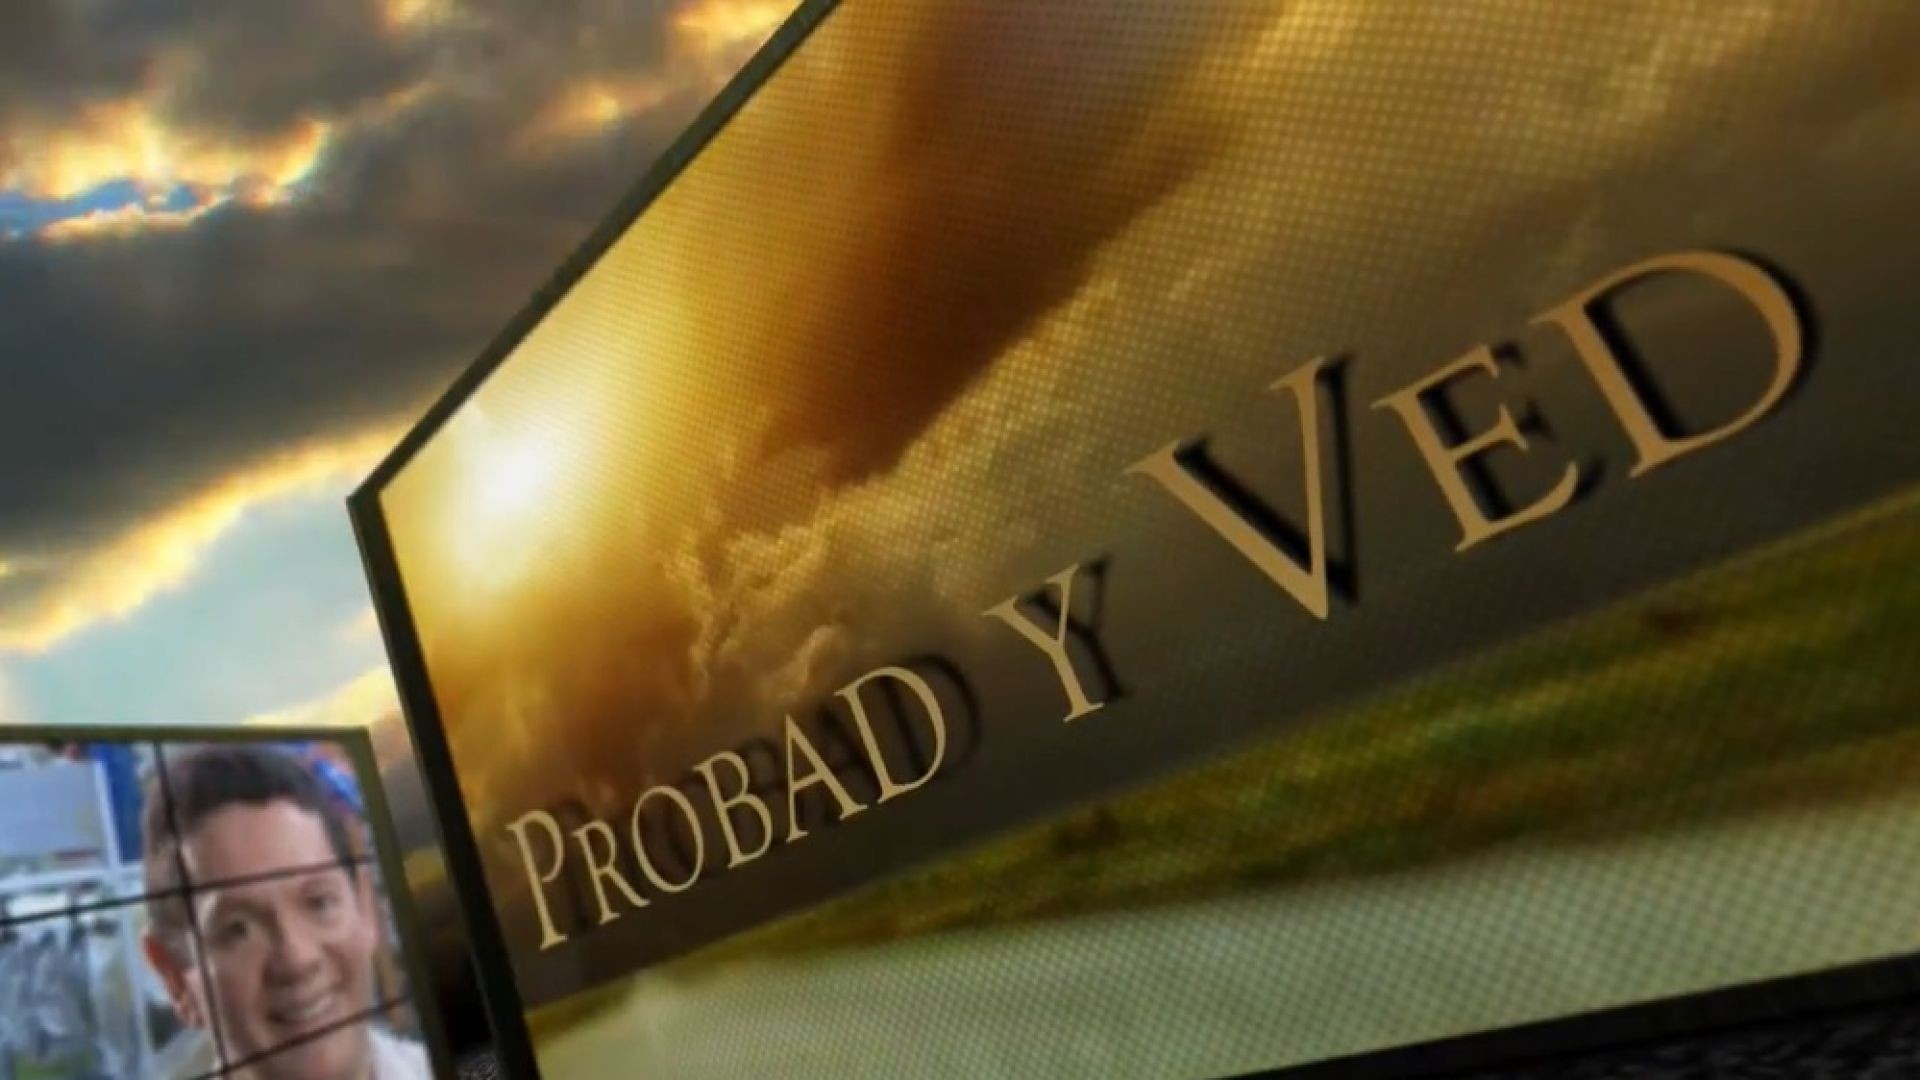 Probad y Ved 2013 - Un Nuevo hogar - 19/Oct